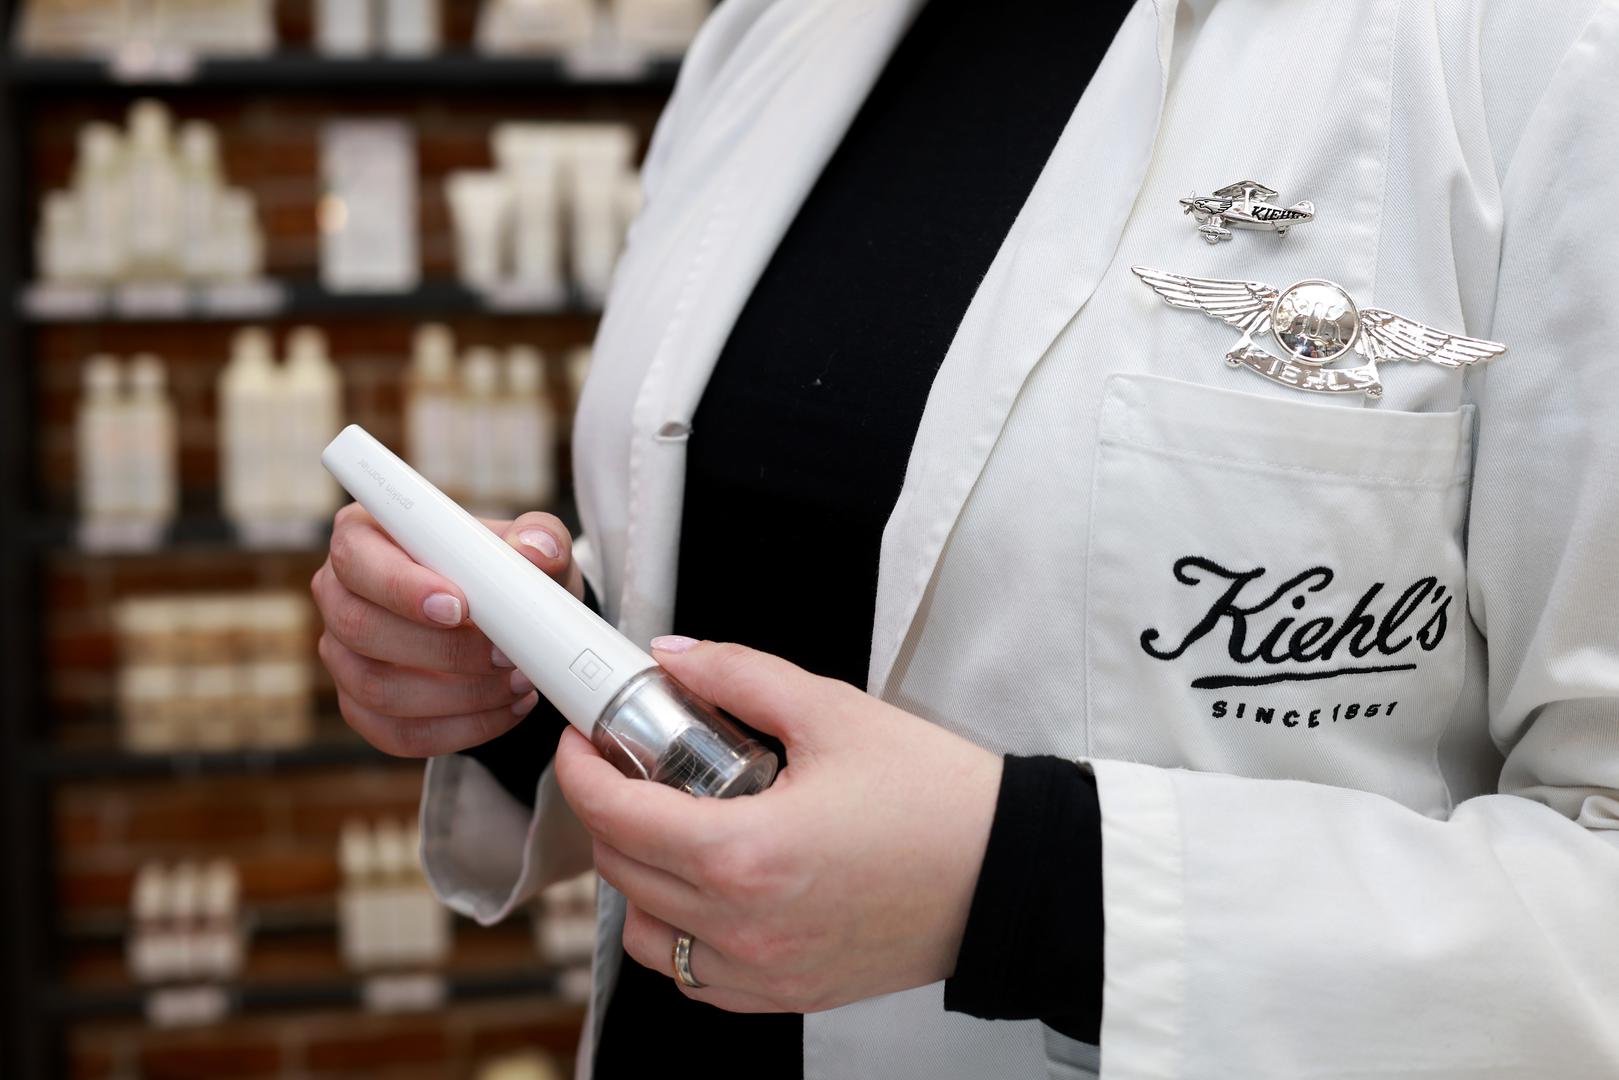 Kiehl's savjetnici od 1970-ih nose bijelu laboratorijsku kutu kao svojevrsni naklon prema farmaceutskom nasljeđu